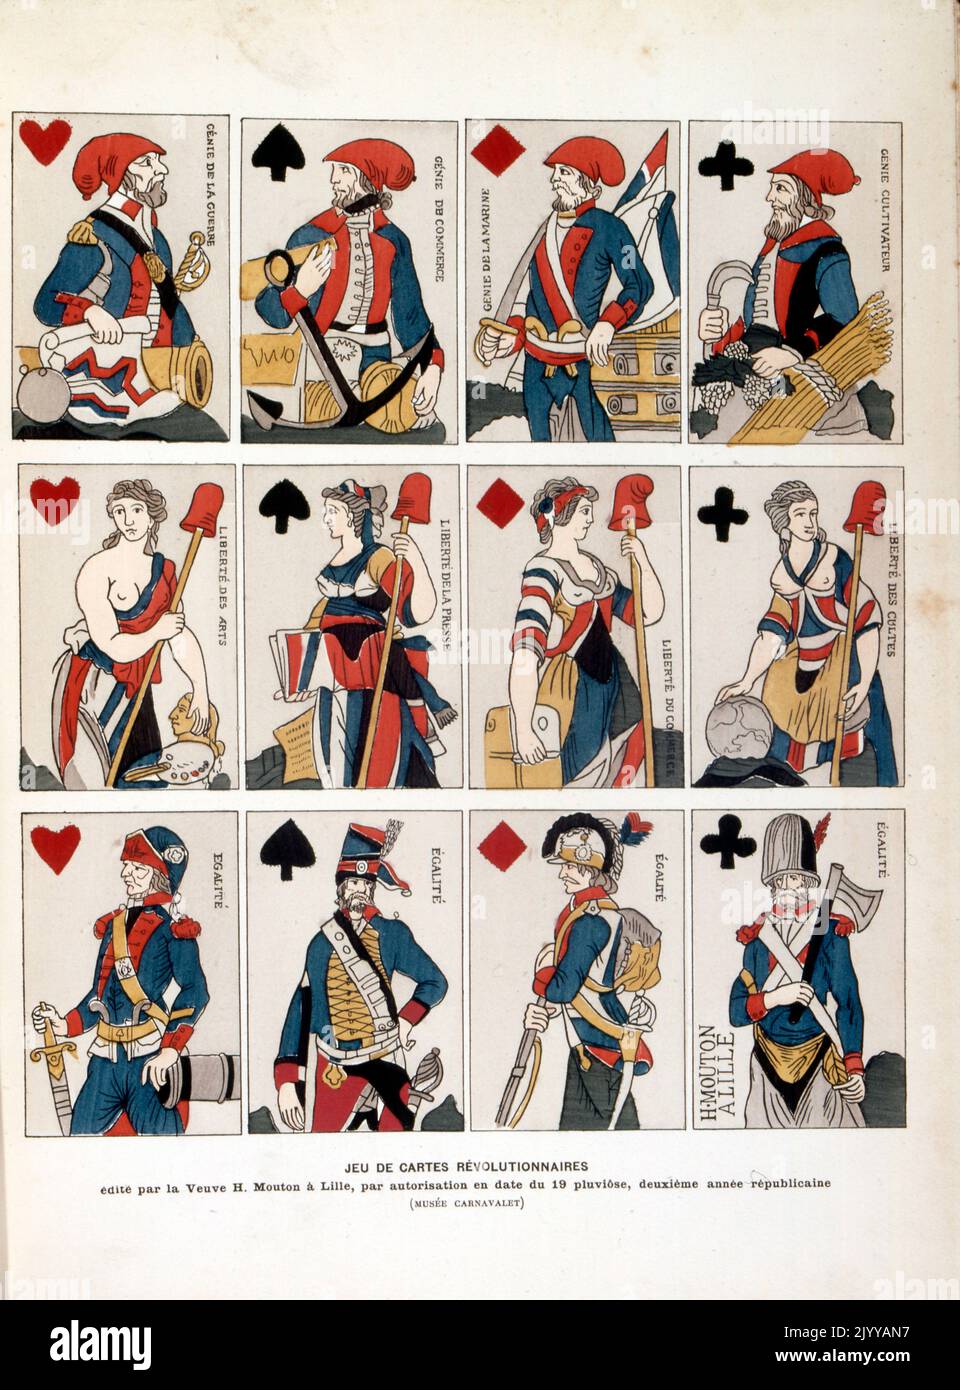 Illustration colorée d'un pack de cartes à jouer des révolutionnaires publié à Lille en 1792. Banque D'Images